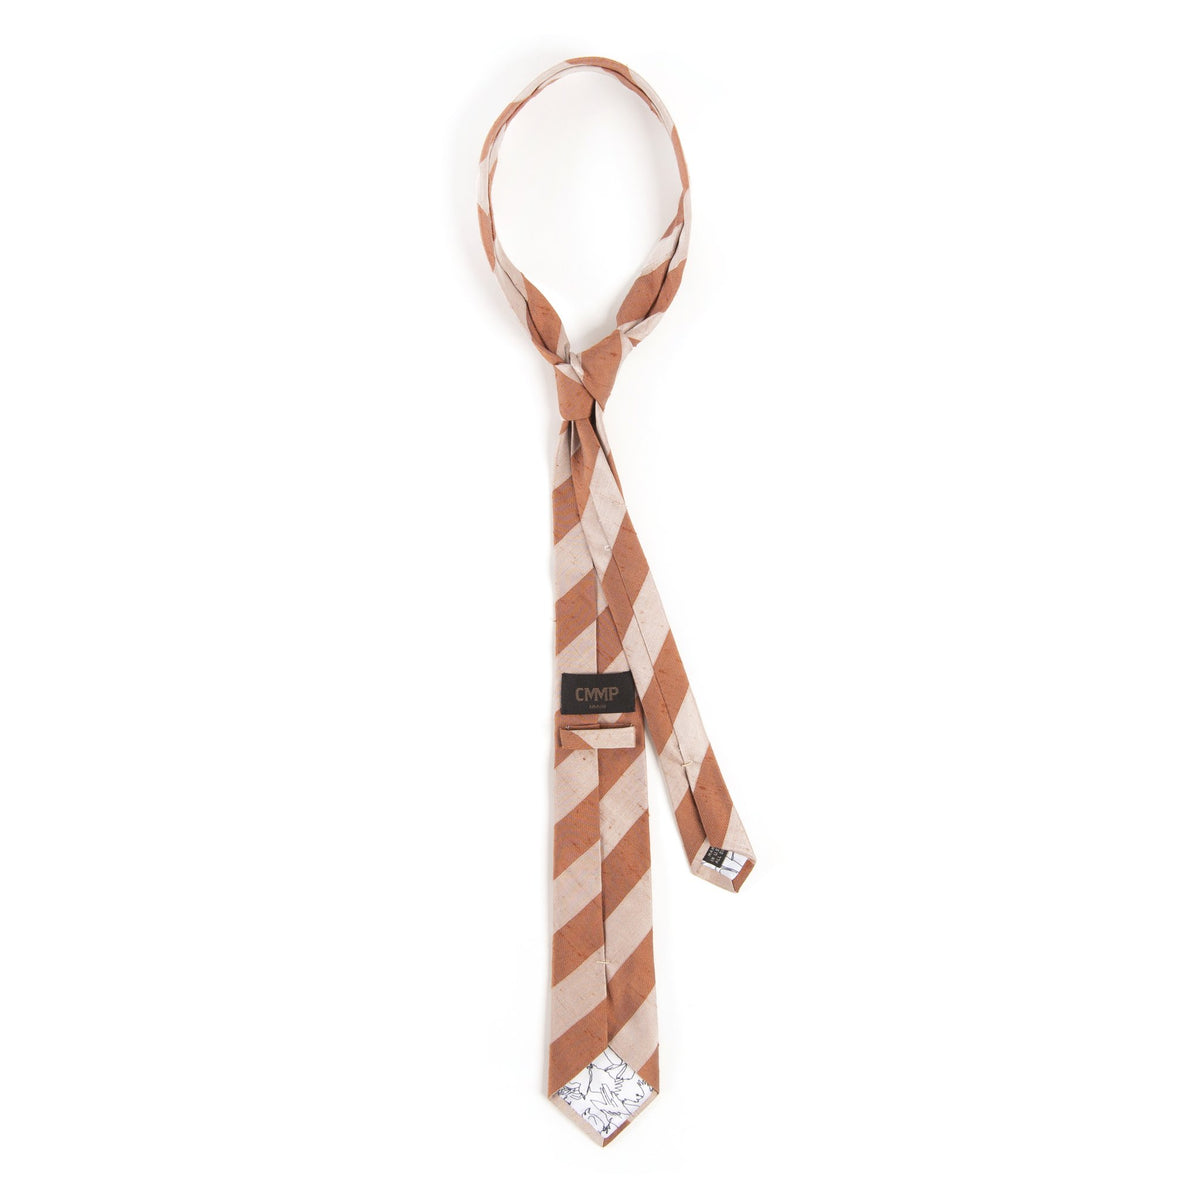 Blush Stripe Tie Accessories Commonwealth Proper